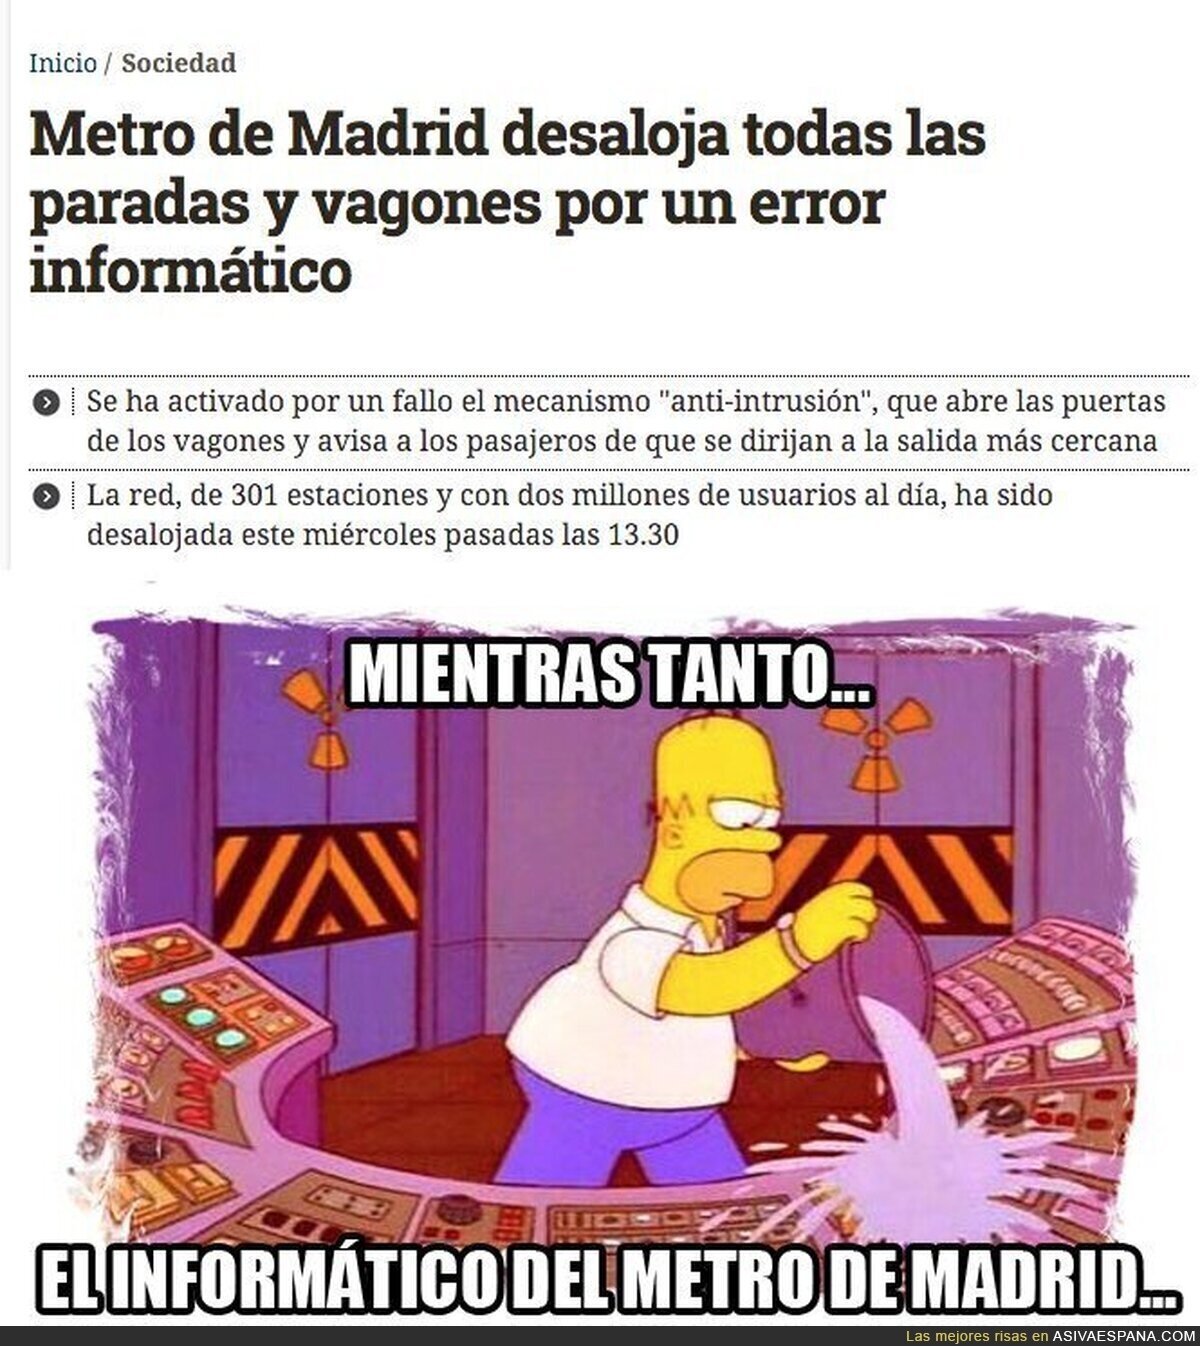 Caos en el Metro de Madrid